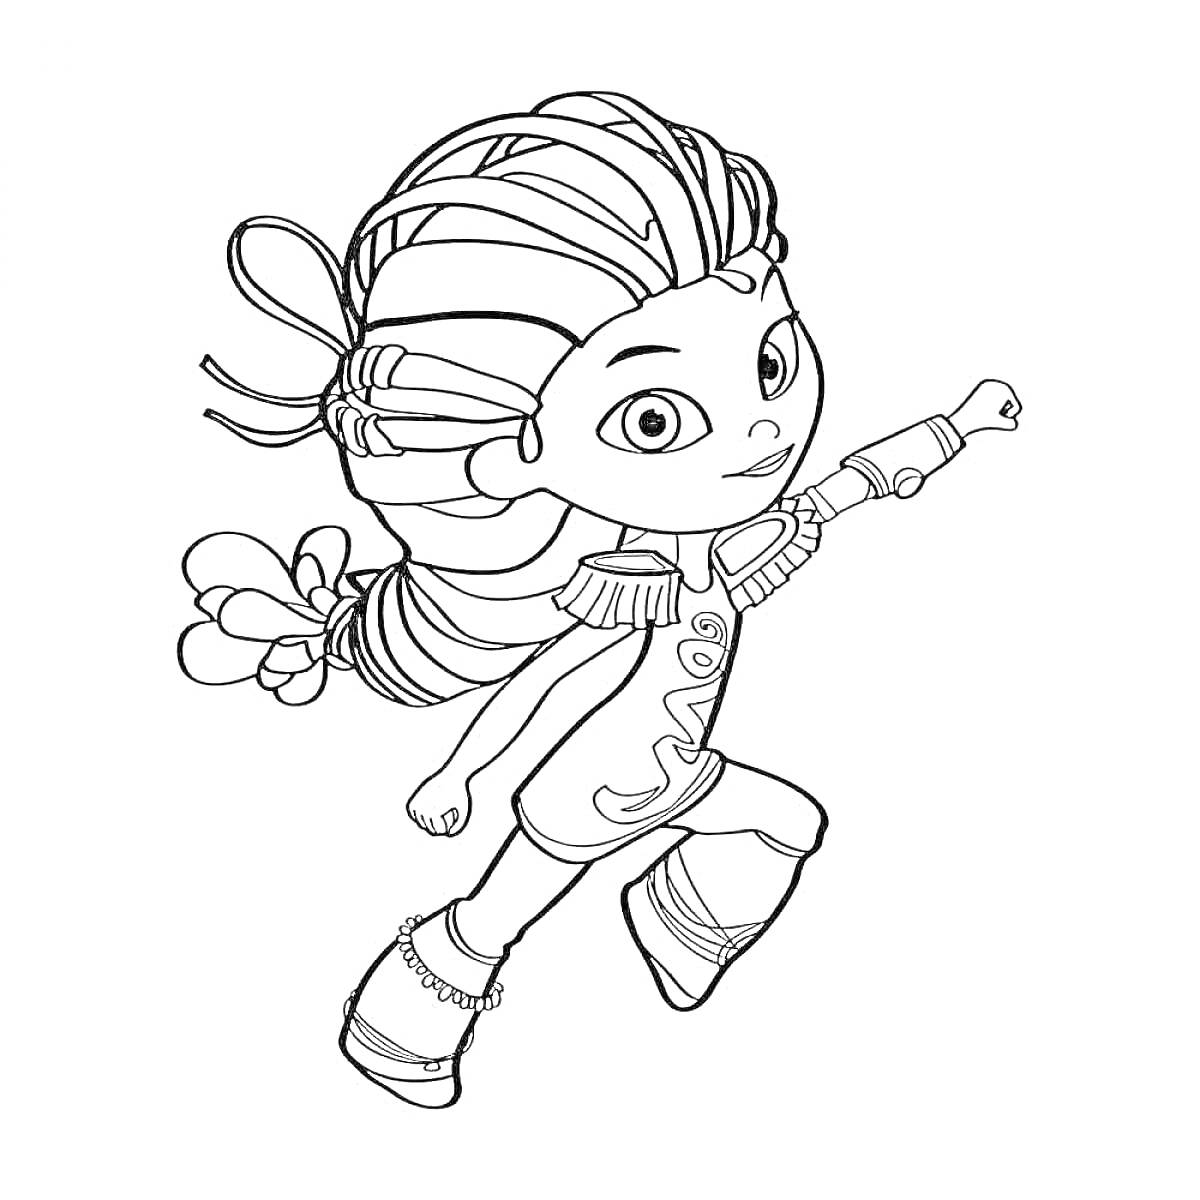 Раскраска Девочка с косичками в прыжке из мультфильма 